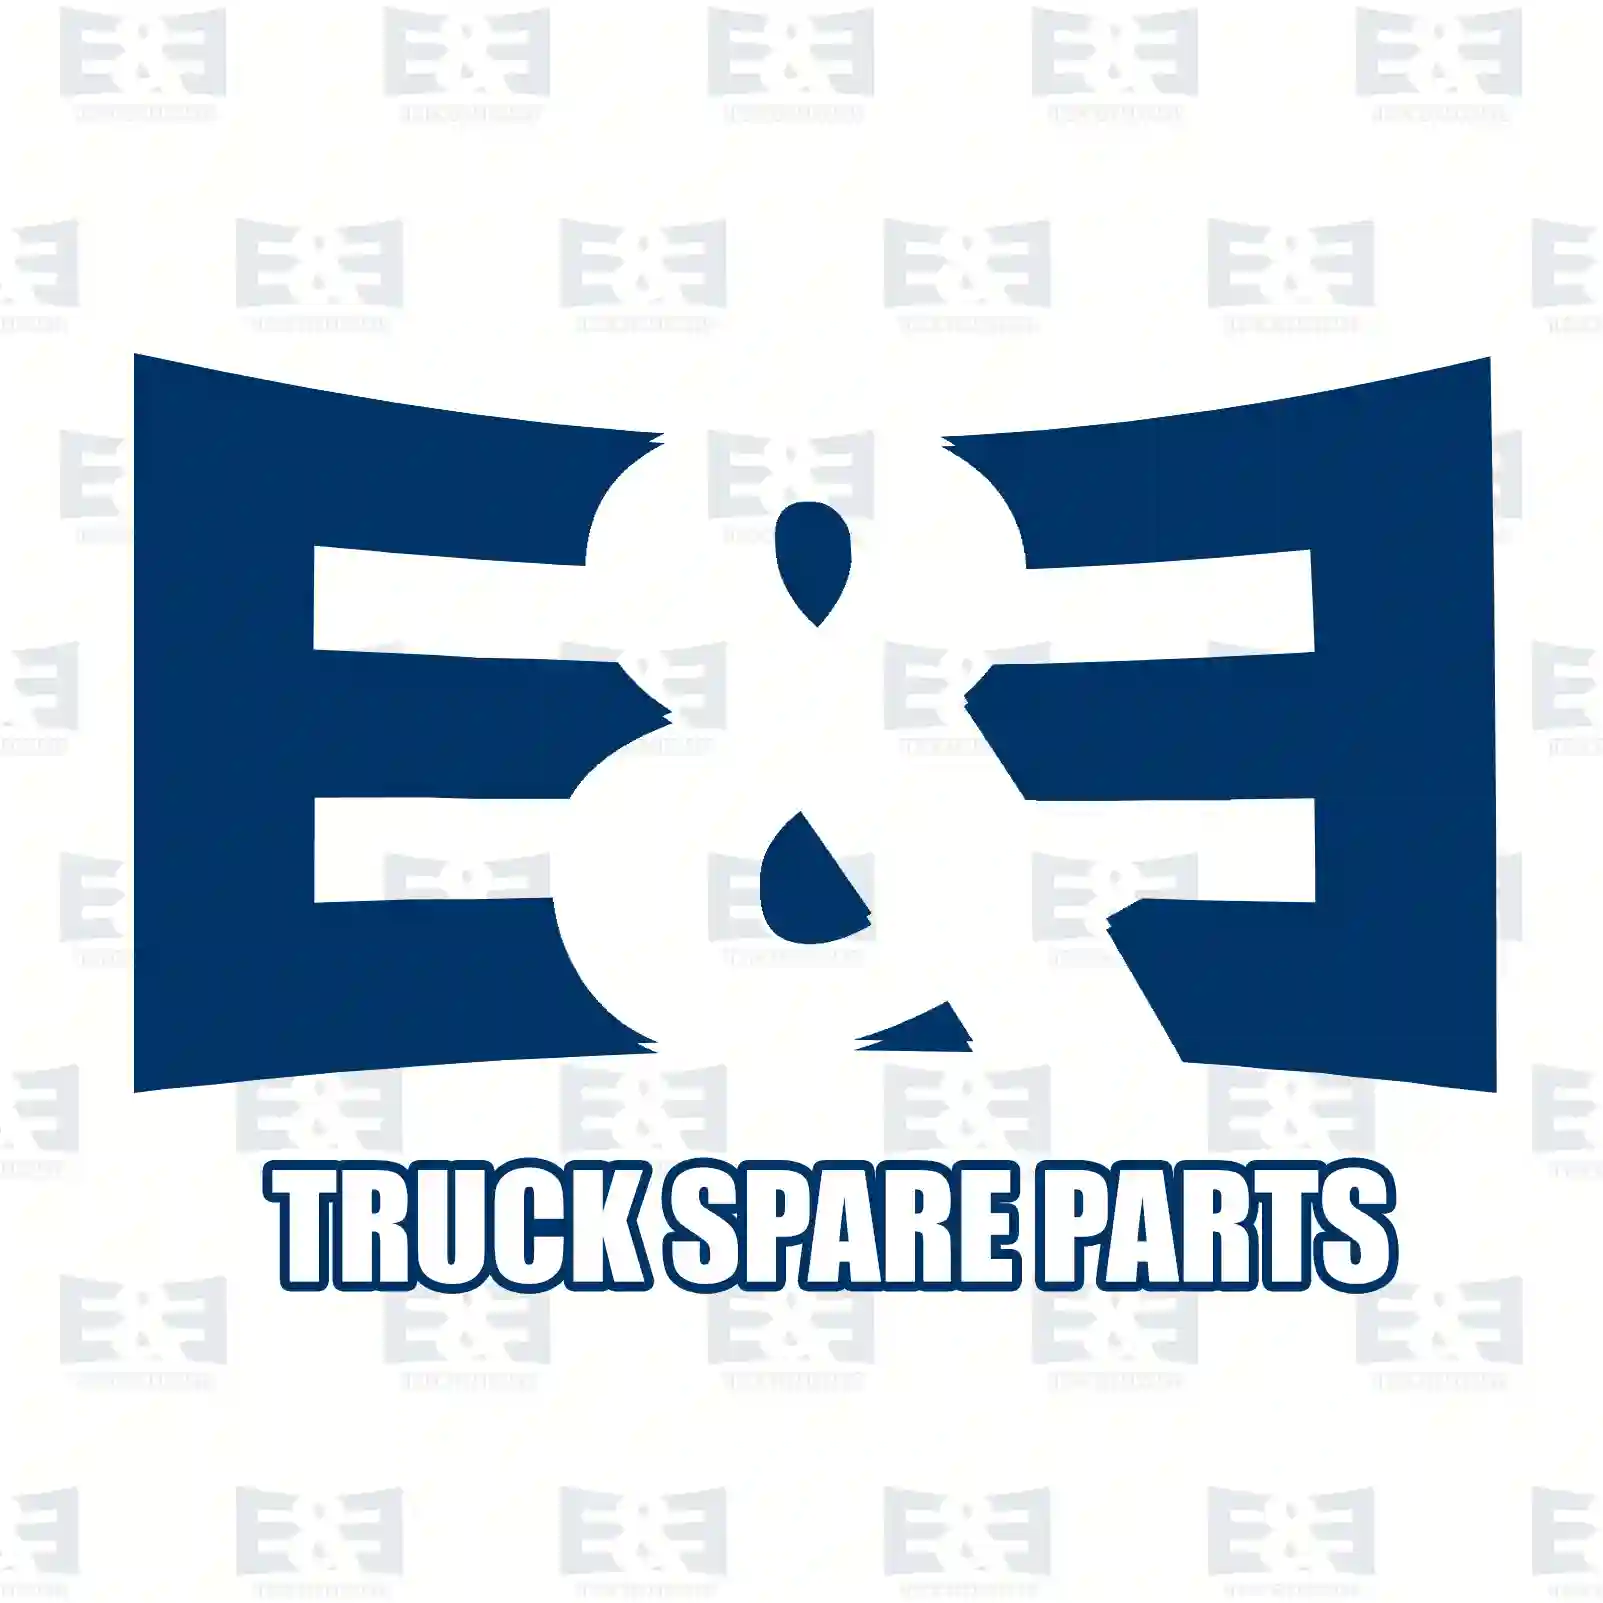 Brake disc, 2E2296280, 6364230012, 6394230112, 639423011224, , , , , , , ||  2E2296280 E&E Truck Spare Parts | Truck Spare Parts, Auotomotive Spare Parts Brake disc, 2E2296280, 6364230012, 6394230112, 639423011224, , , , , , , ||  2E2296280 E&E Truck Spare Parts | Truck Spare Parts, Auotomotive Spare Parts